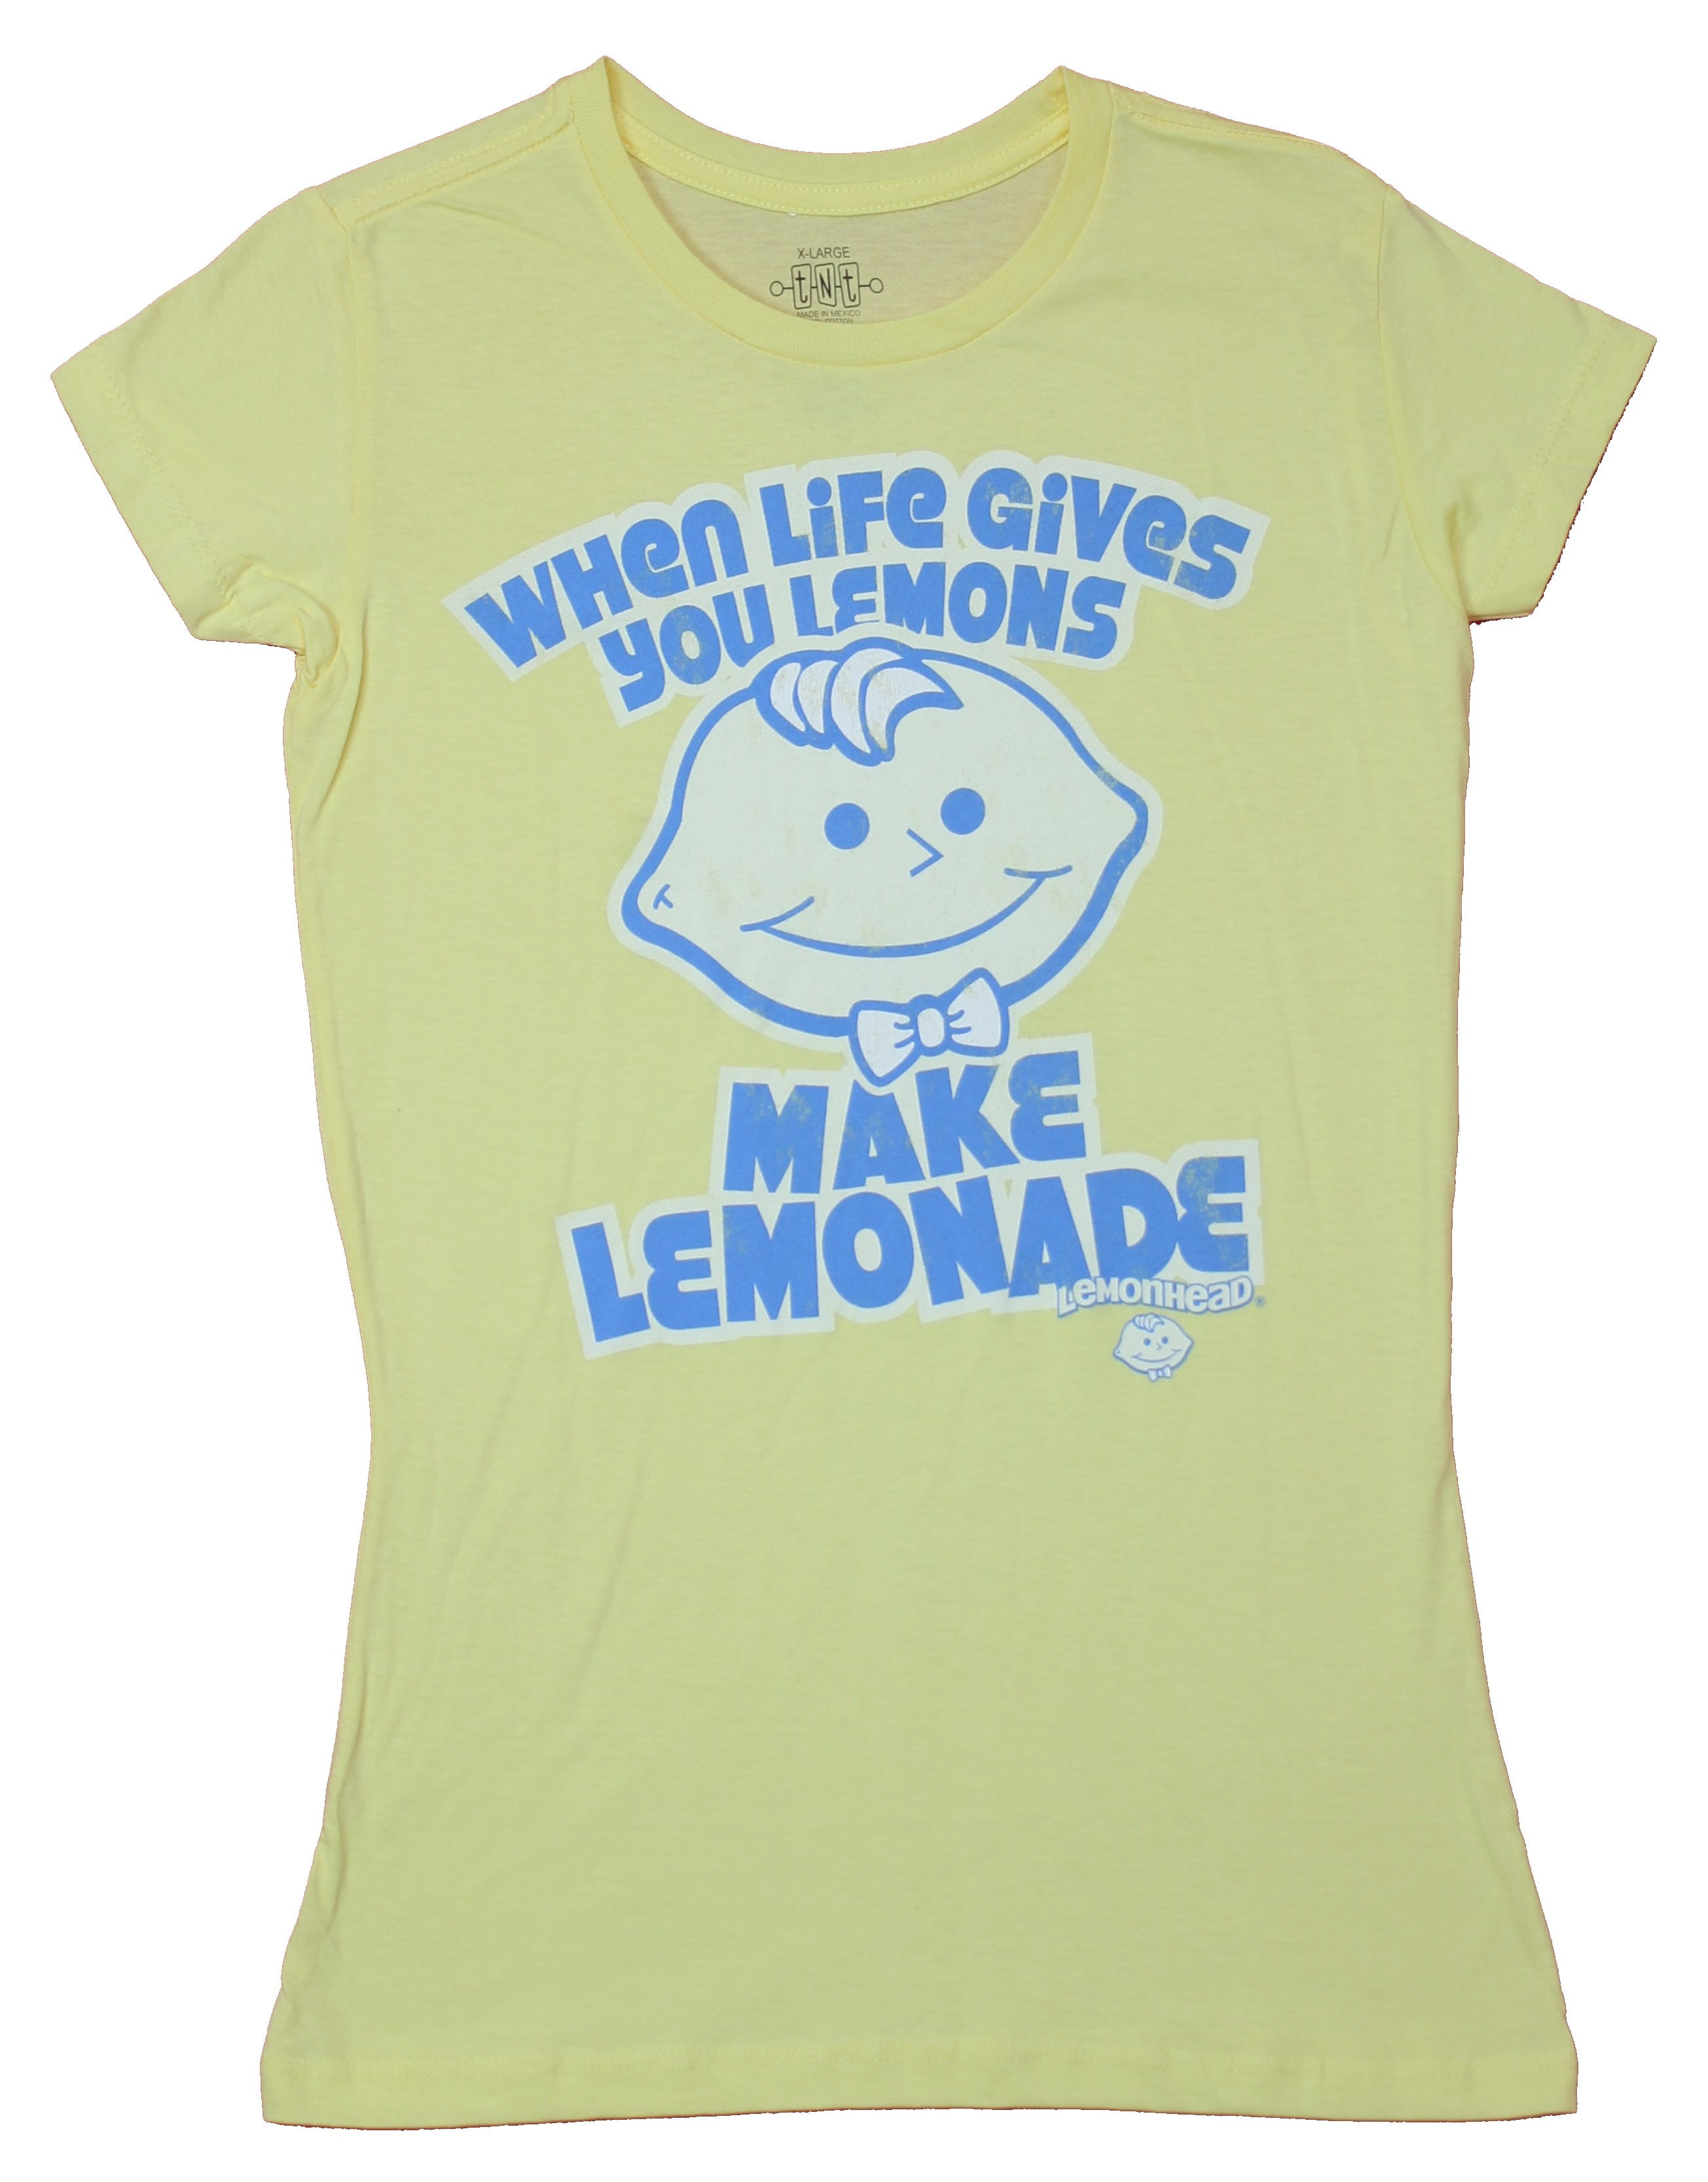 Jeg mistede min vej Delegeret Vis stedet Lemonheads Girls Juniors T-Shirt - When Life Gives You Lemons Make Lemonade  (2X-Large) - Walmart.com